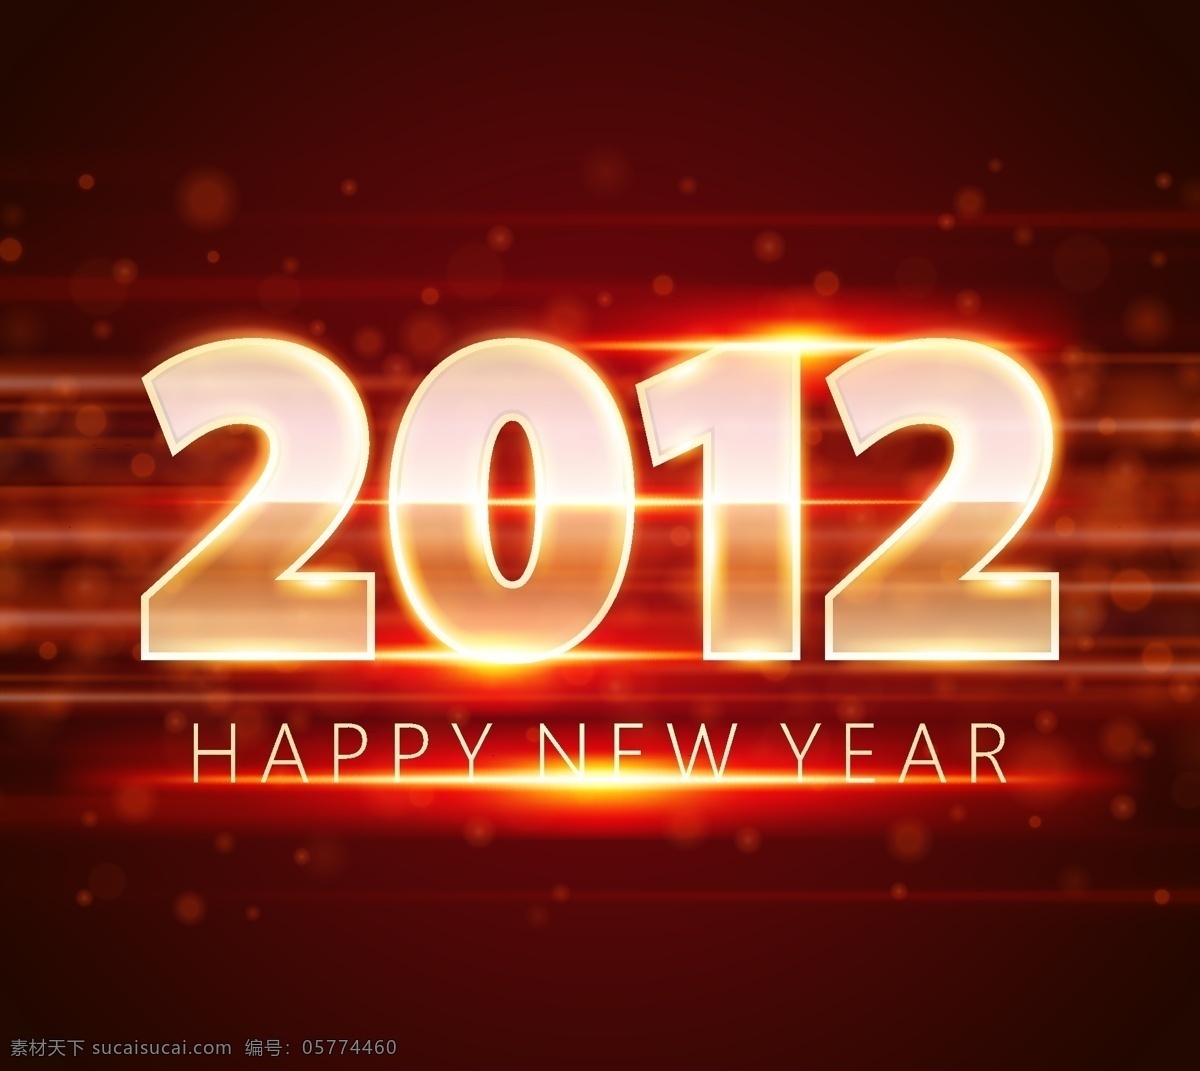 2012 字体 矢量 happy new year 背景 光线 模板 设计稿 素材元素 霓虹效果 源文件 矢量图